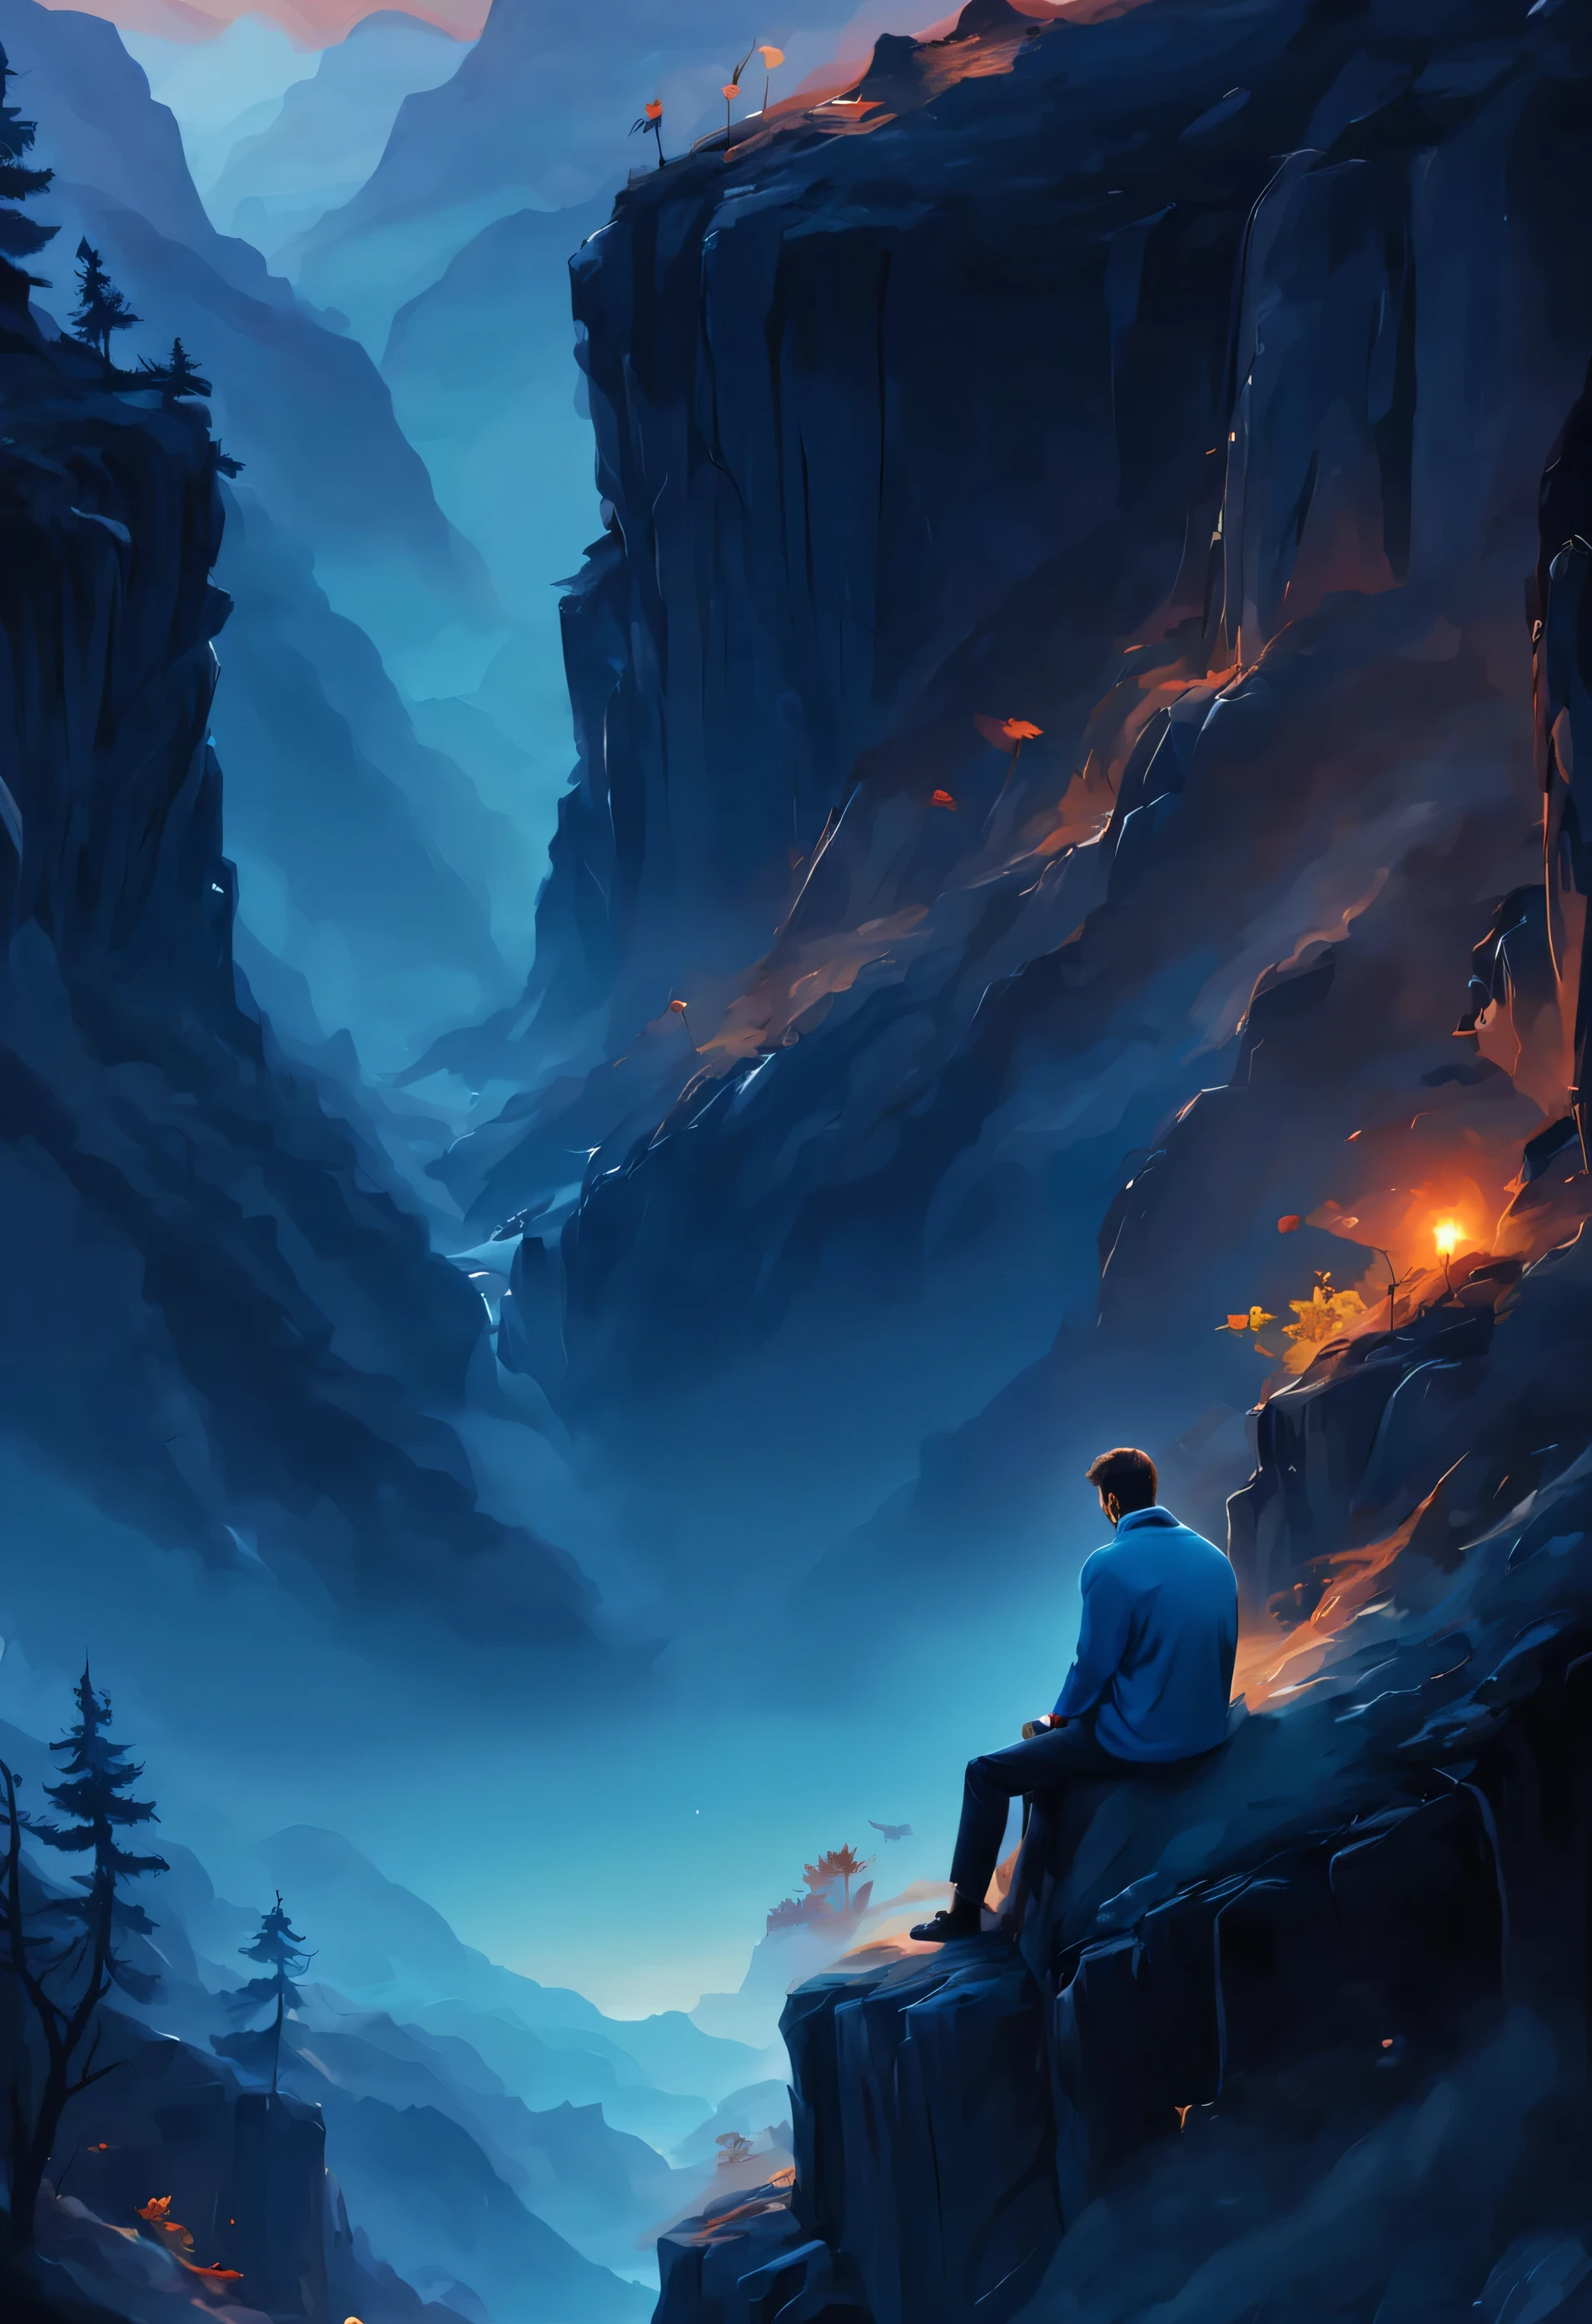 悲傷的人坐在懸崖上，晚上可以欣賞到美麗的自然景色, 悲傷的男人中間向下放置, 男人从后面, 藍色風格, masterful 作品, 藝術幻想, 作品, amazing 作品, beautiful 作品